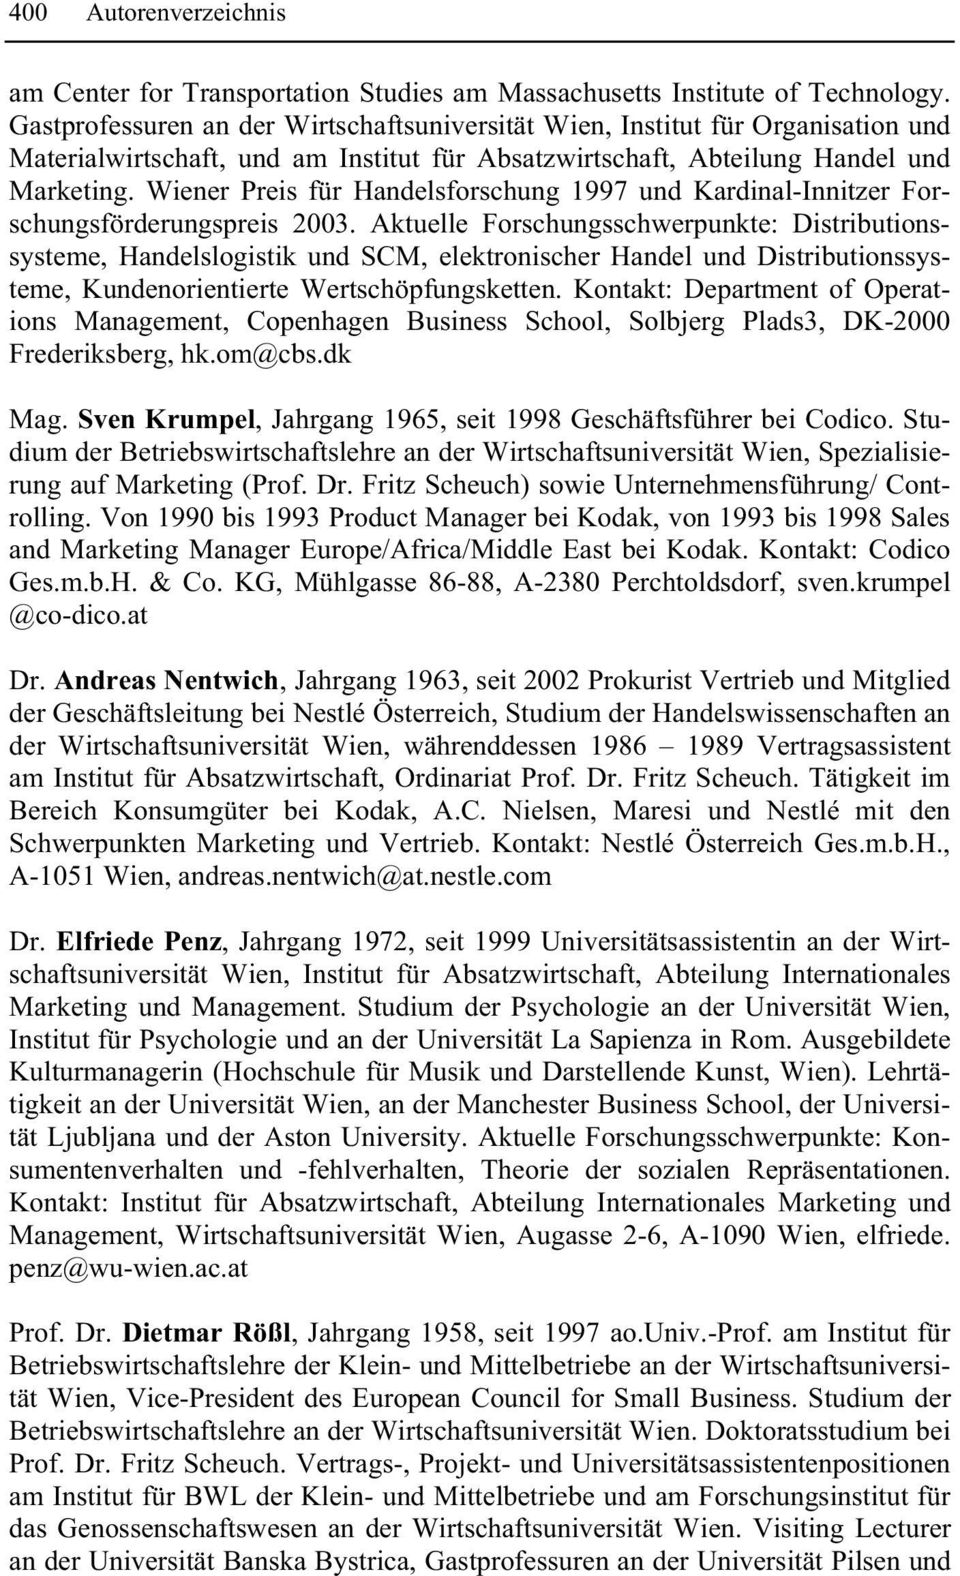 Wiener Preis für Handelsforschung 1997 und Kardinal-Innitzer Forschungsförderungspreis 2003.